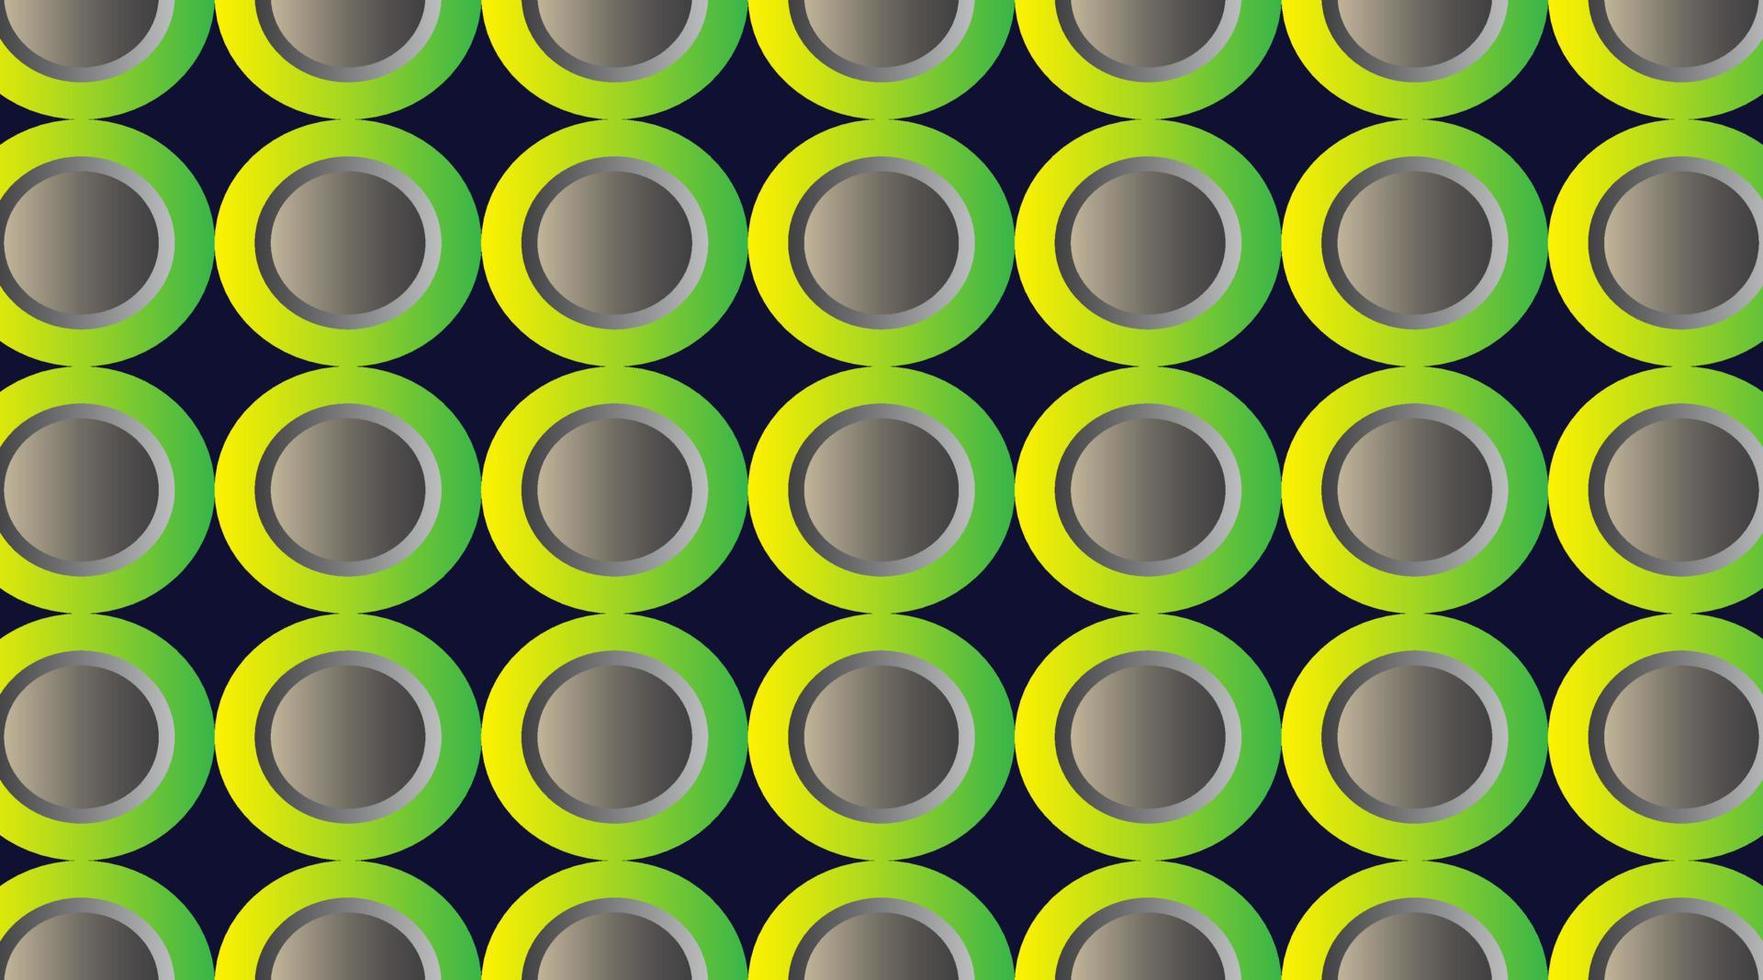 anneaux concentriques verts et jaunes. arrière-plan futuriste abstrait. illustration géométrique vectorielle. formes radiales. conception de couverture futuriste. concept de style de diffusion minimaliste. vecteur